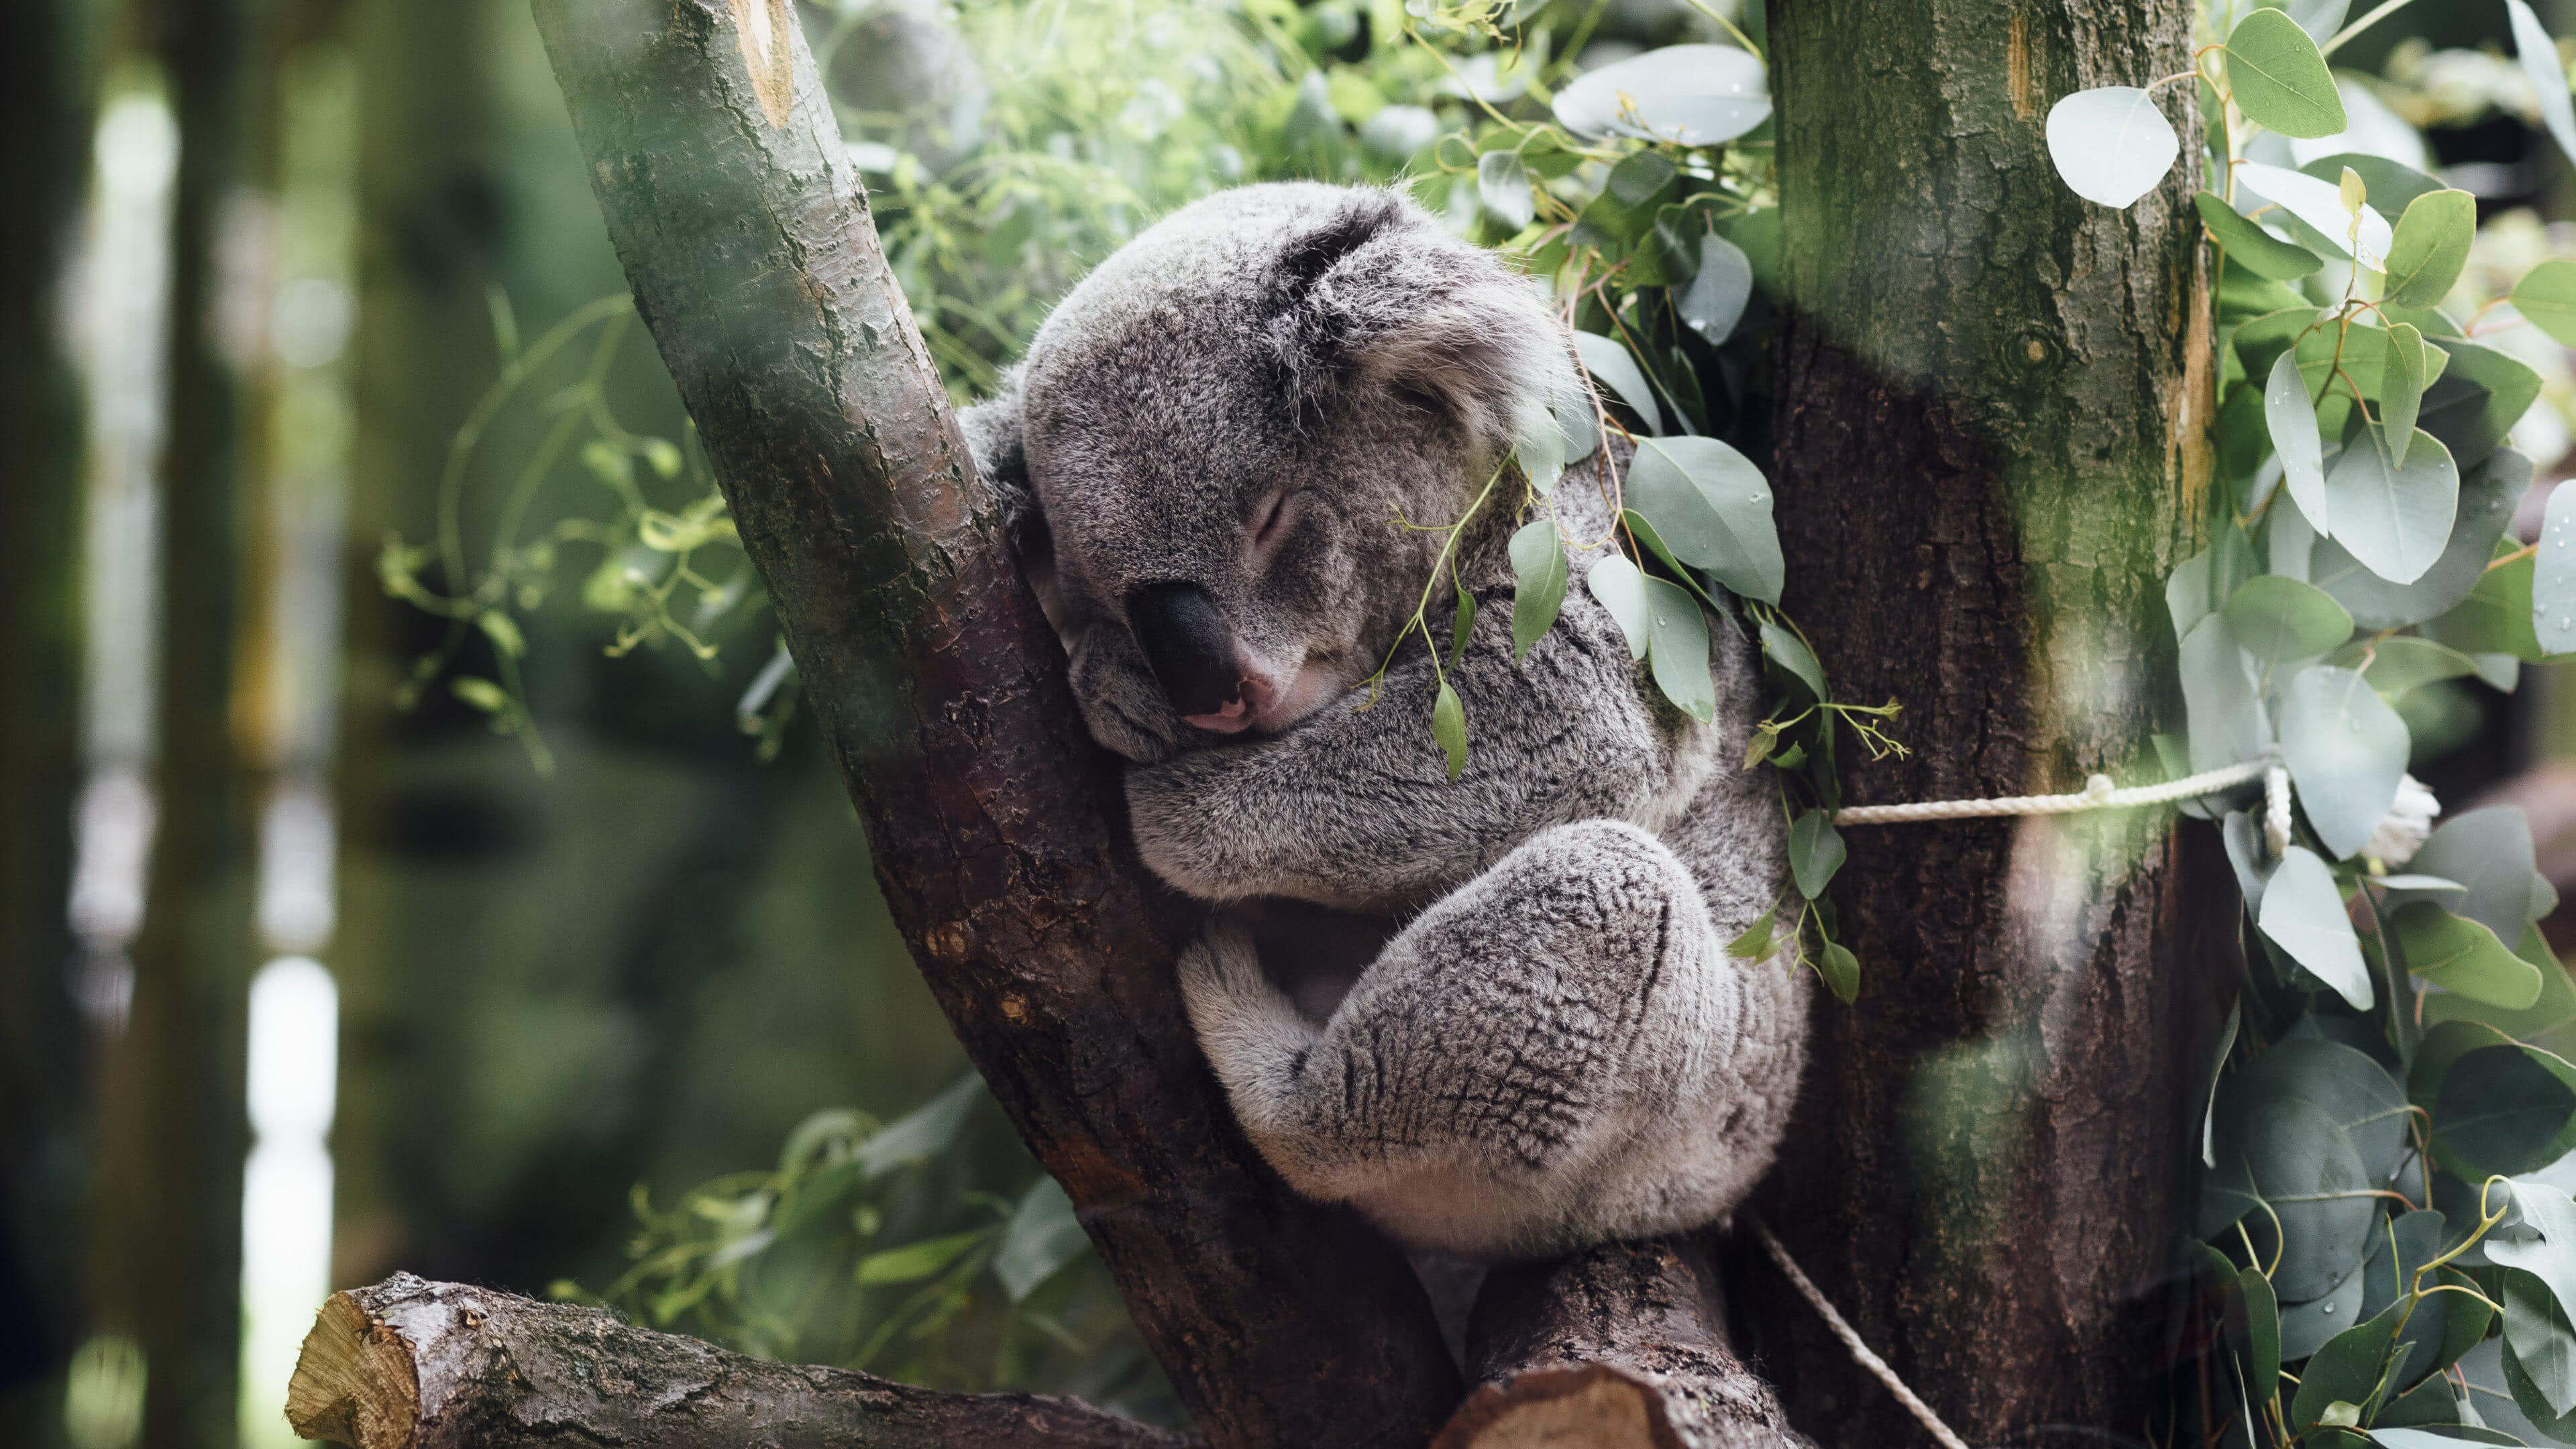 Sleeping koala, Tree-dwelling beauty, Peaceful slumber, 4K UHD wallpaper, 3840x2160 4K Desktop